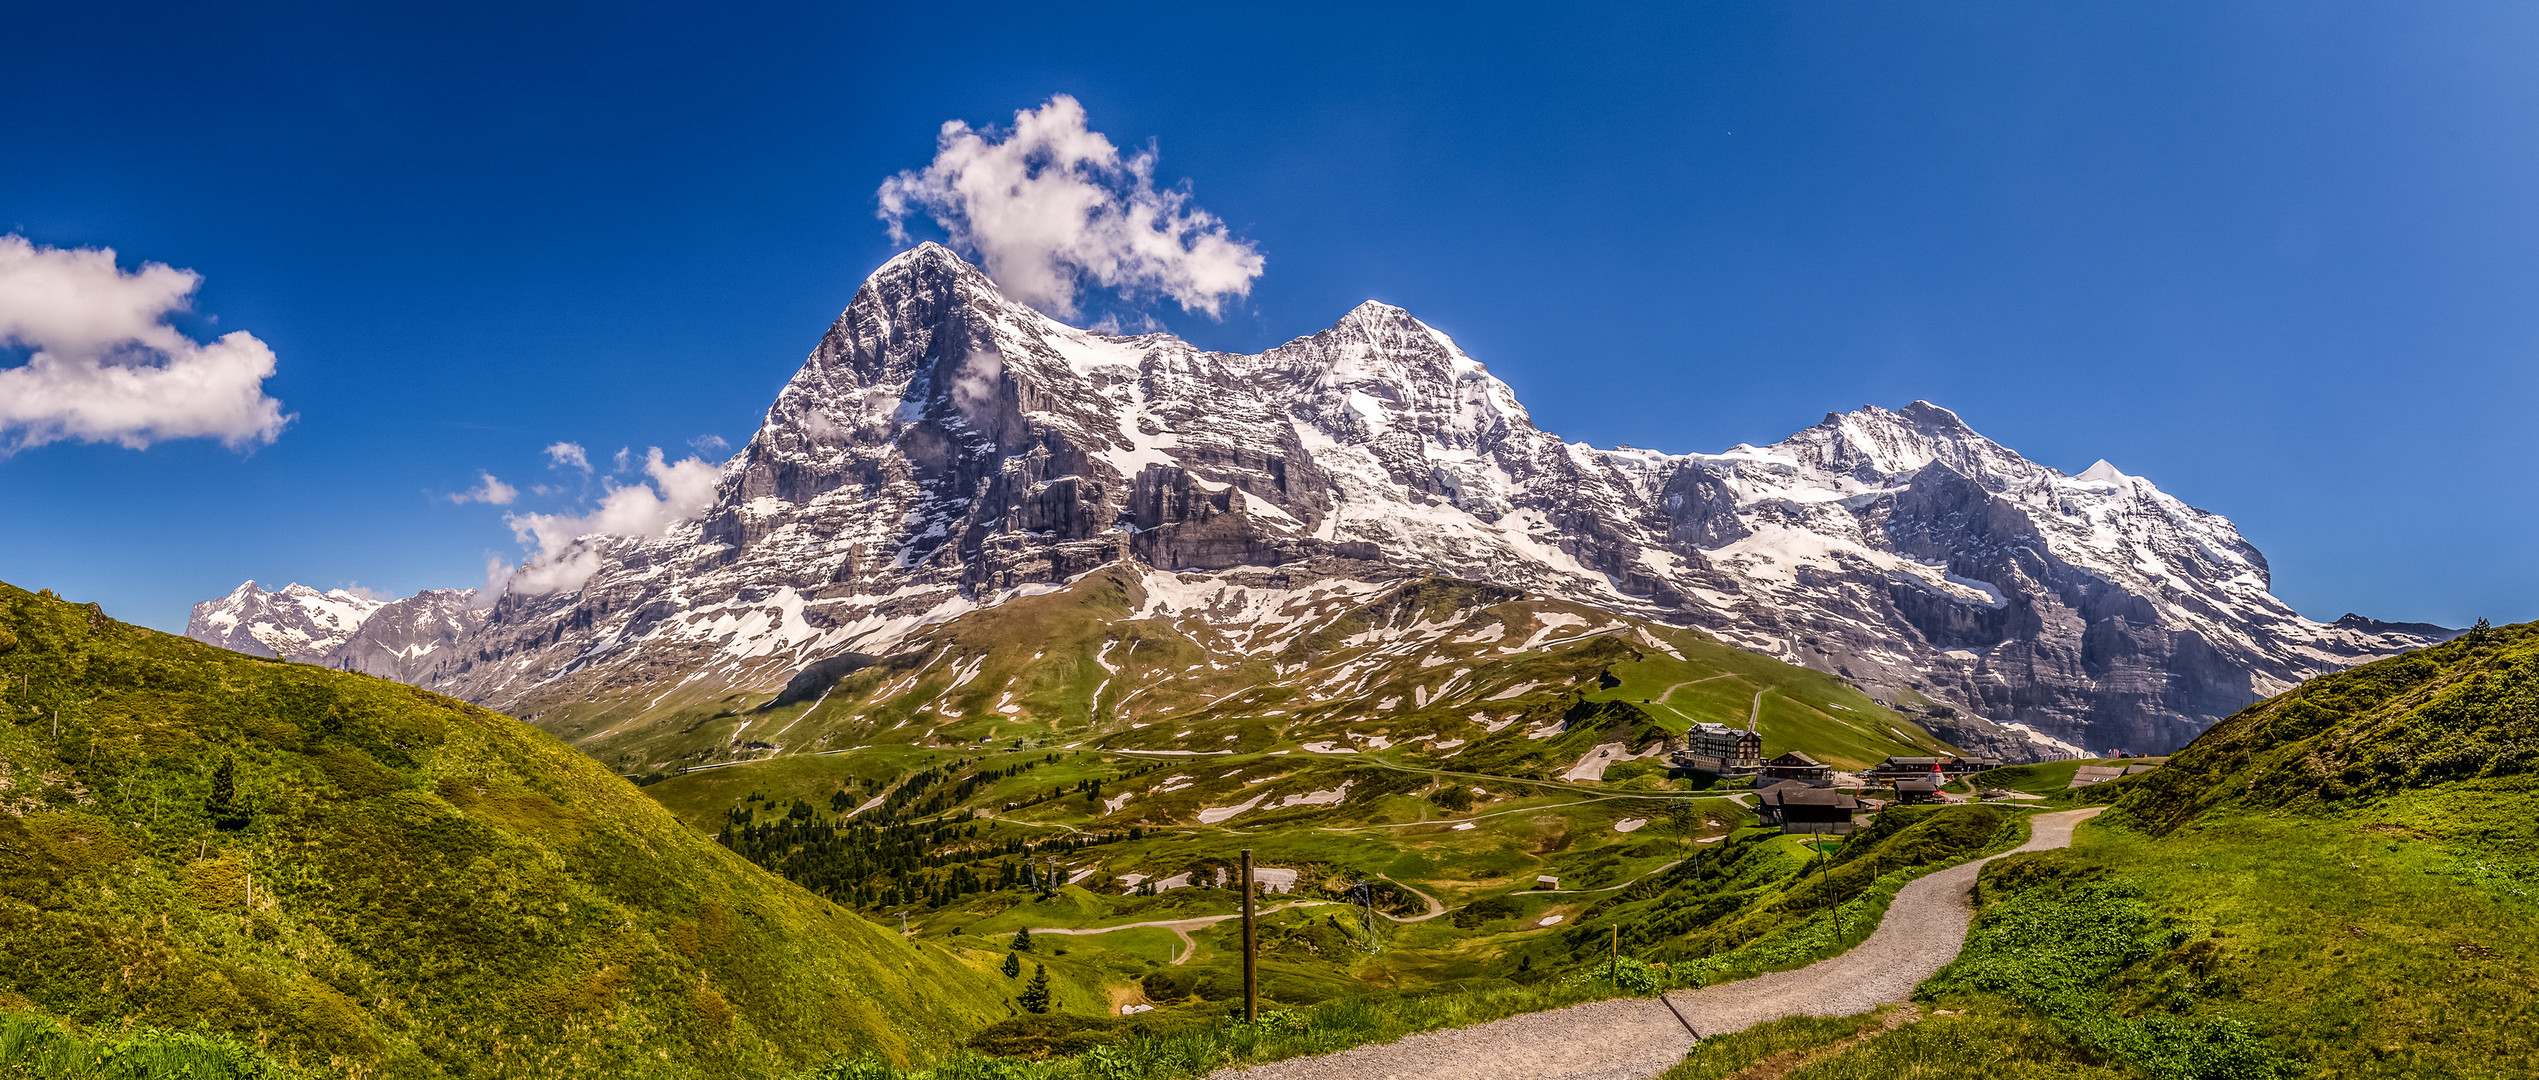 Eigernordwand, Mönch und Jungfrau